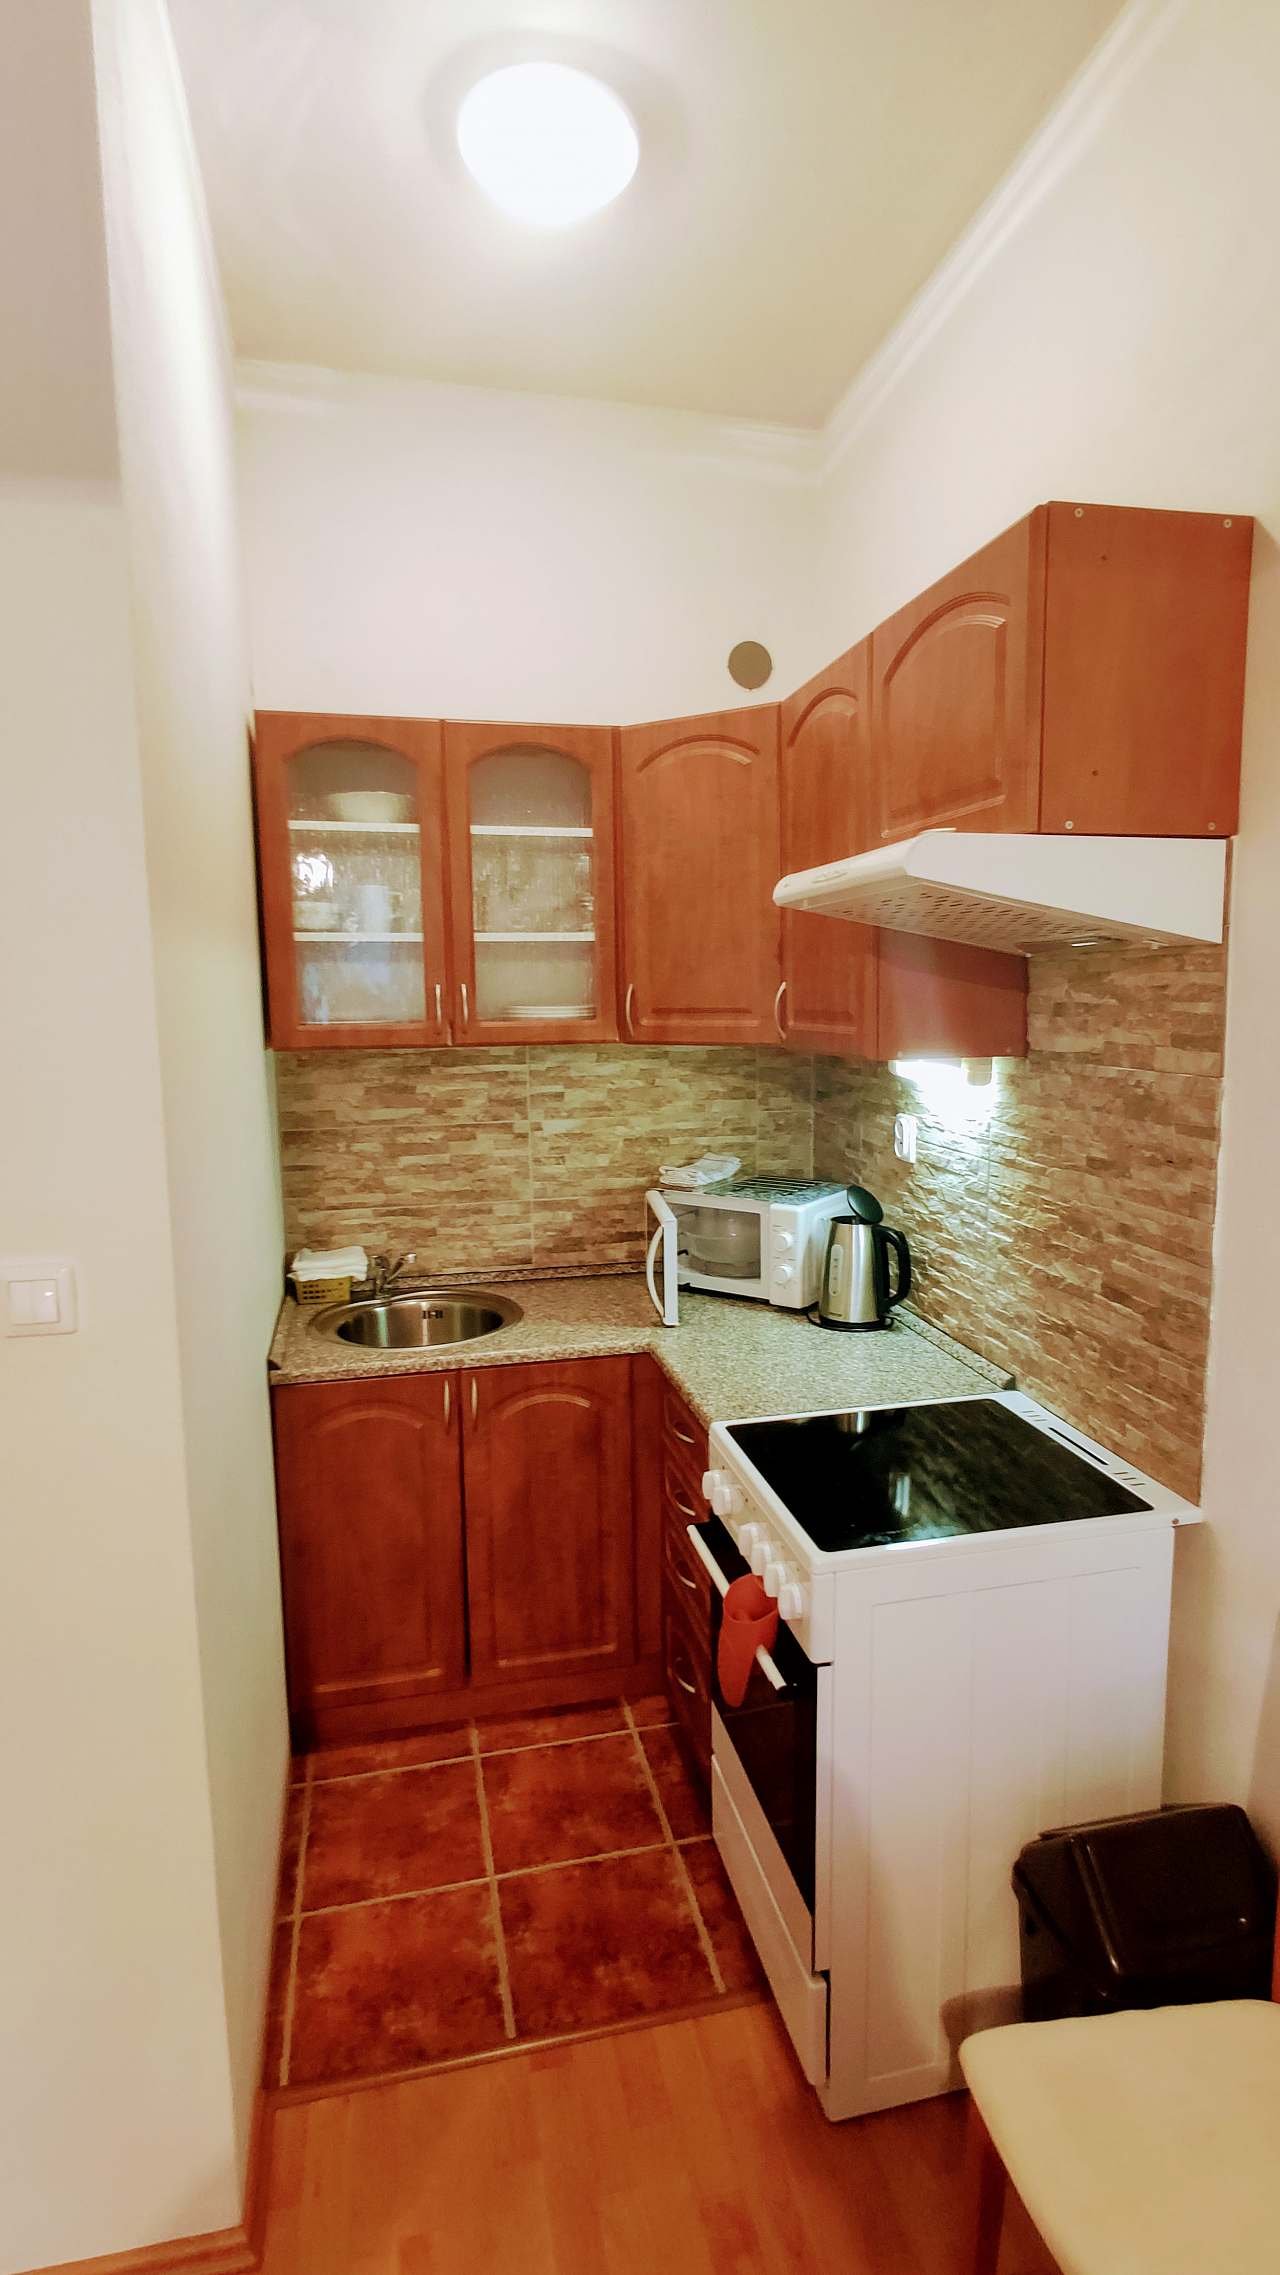 Apartmán - obývací pokoj s kuchyní